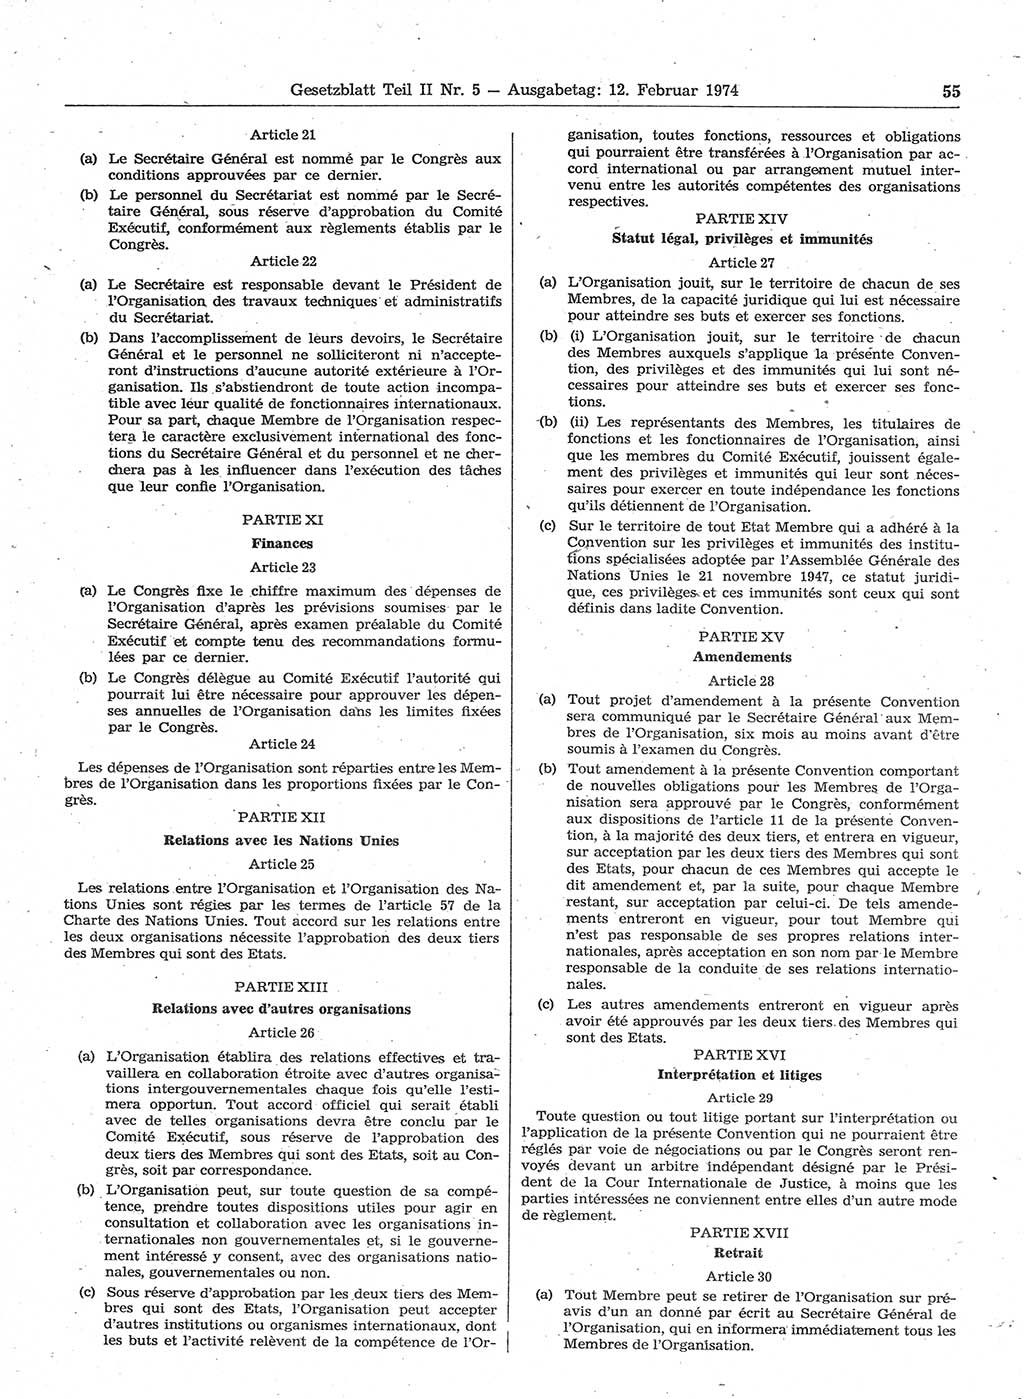 Gesetzblatt (GBl.) der Deutschen Demokratischen Republik (DDR) Teil ⅠⅠ 1974, Seite 55 (GBl. DDR ⅠⅠ 1974, S. 55)